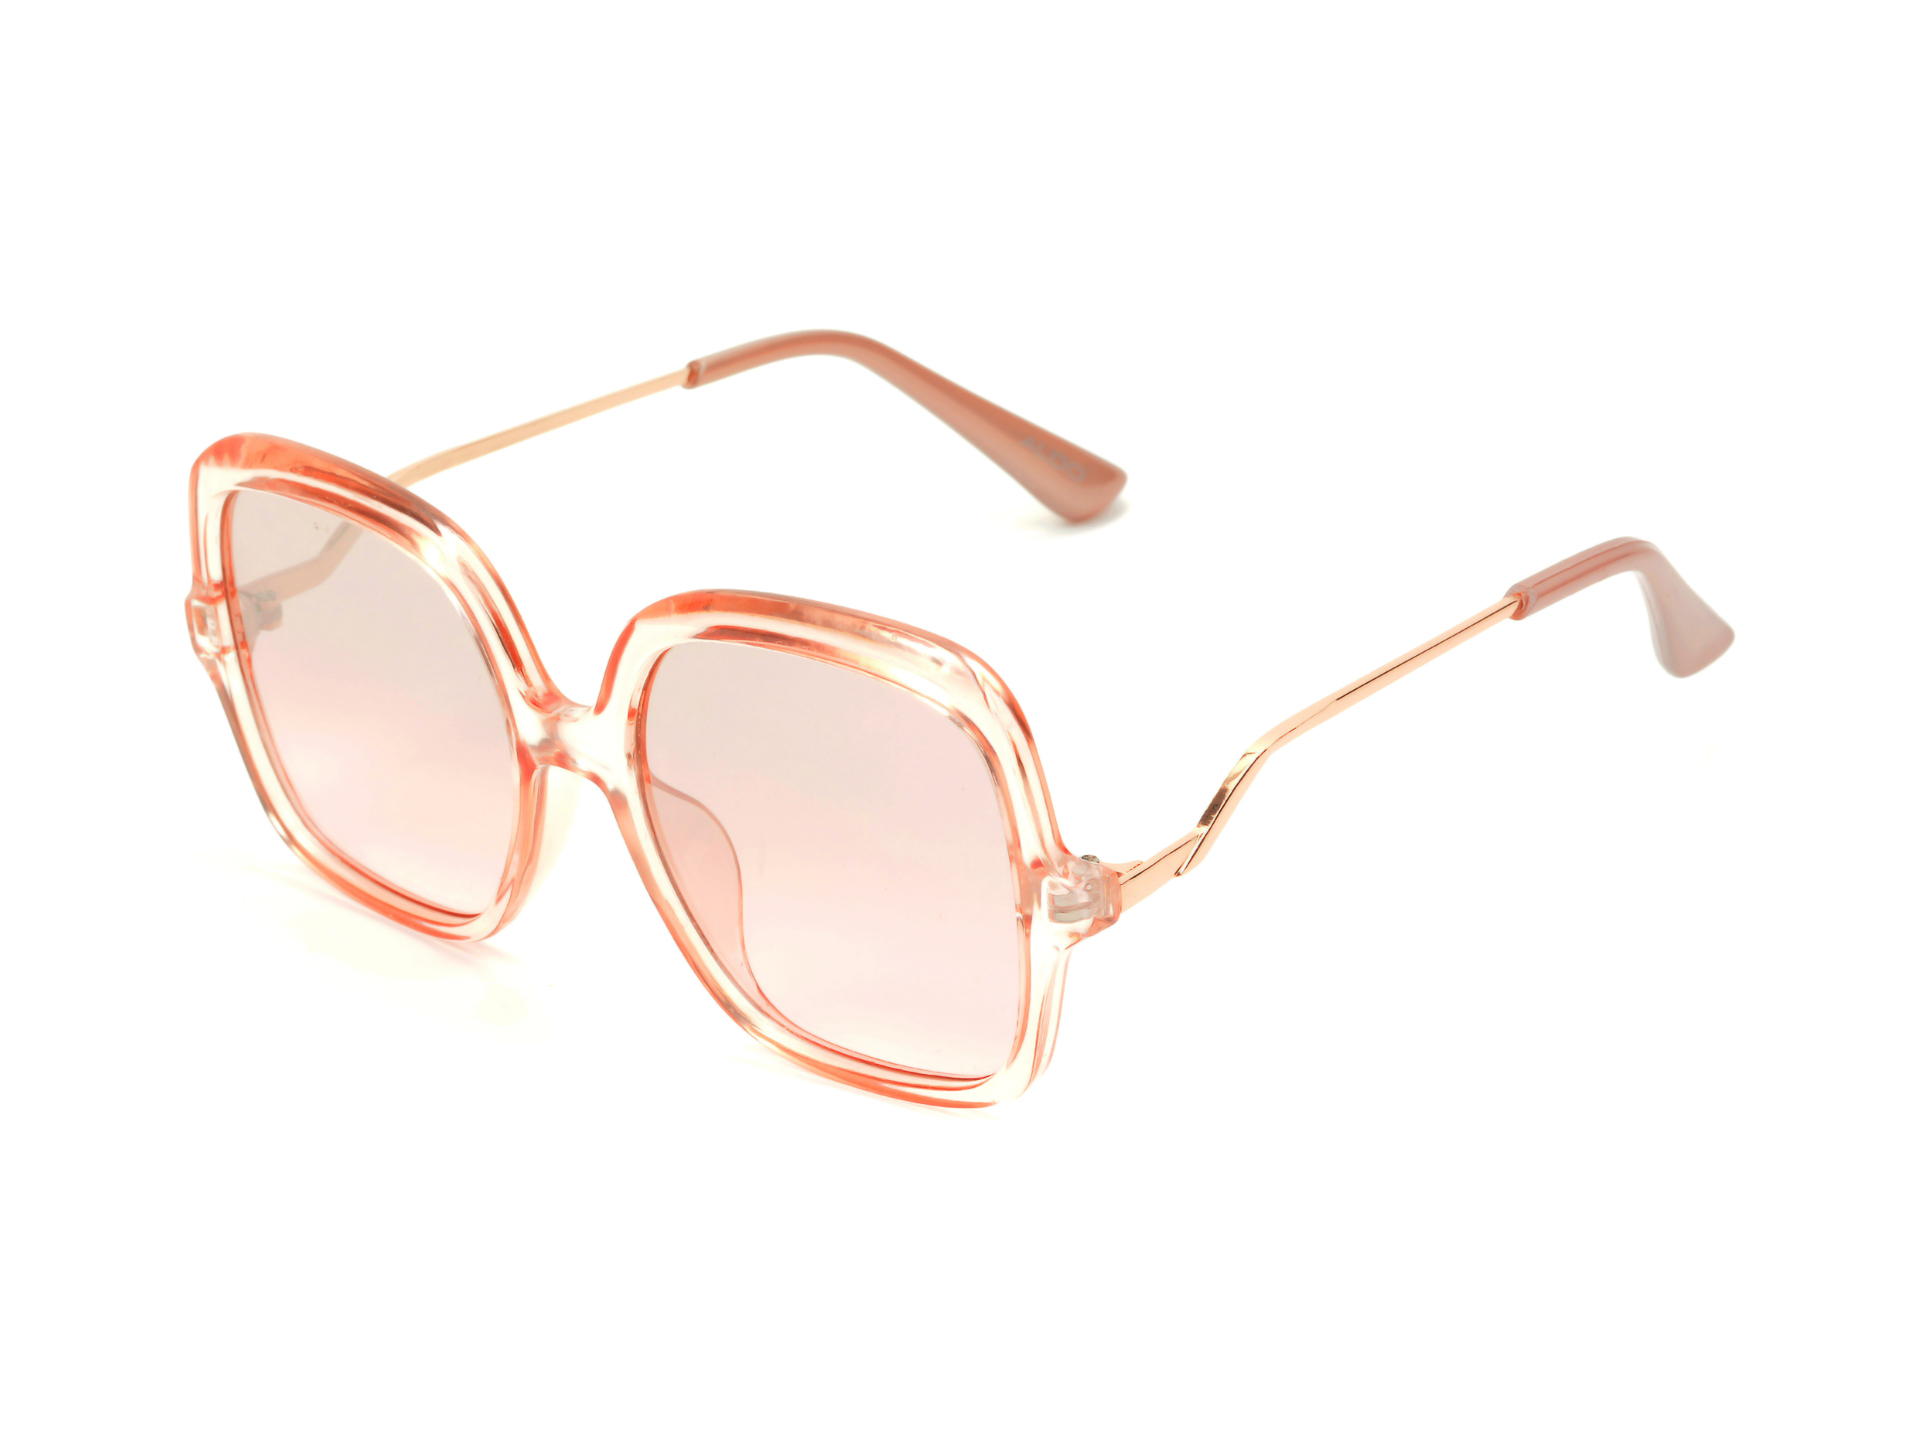 Ochelari de soare ALDO roz, Koumala680, din PVC